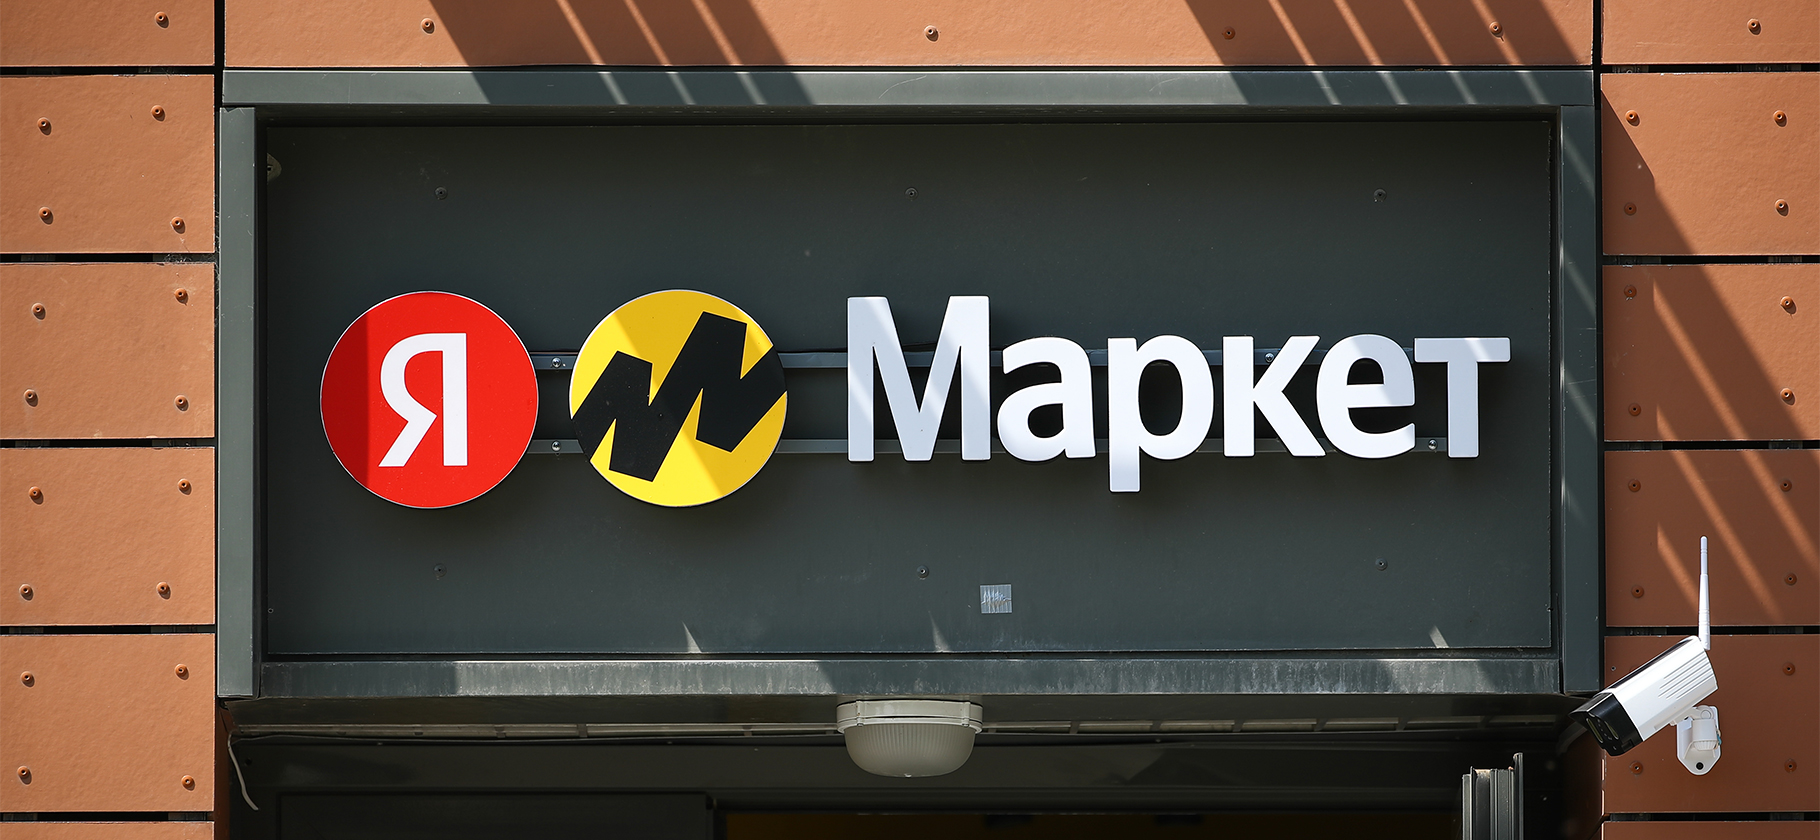 Бизнес может покупать на «Яндекс-маркете» товары и получать вычет НДС